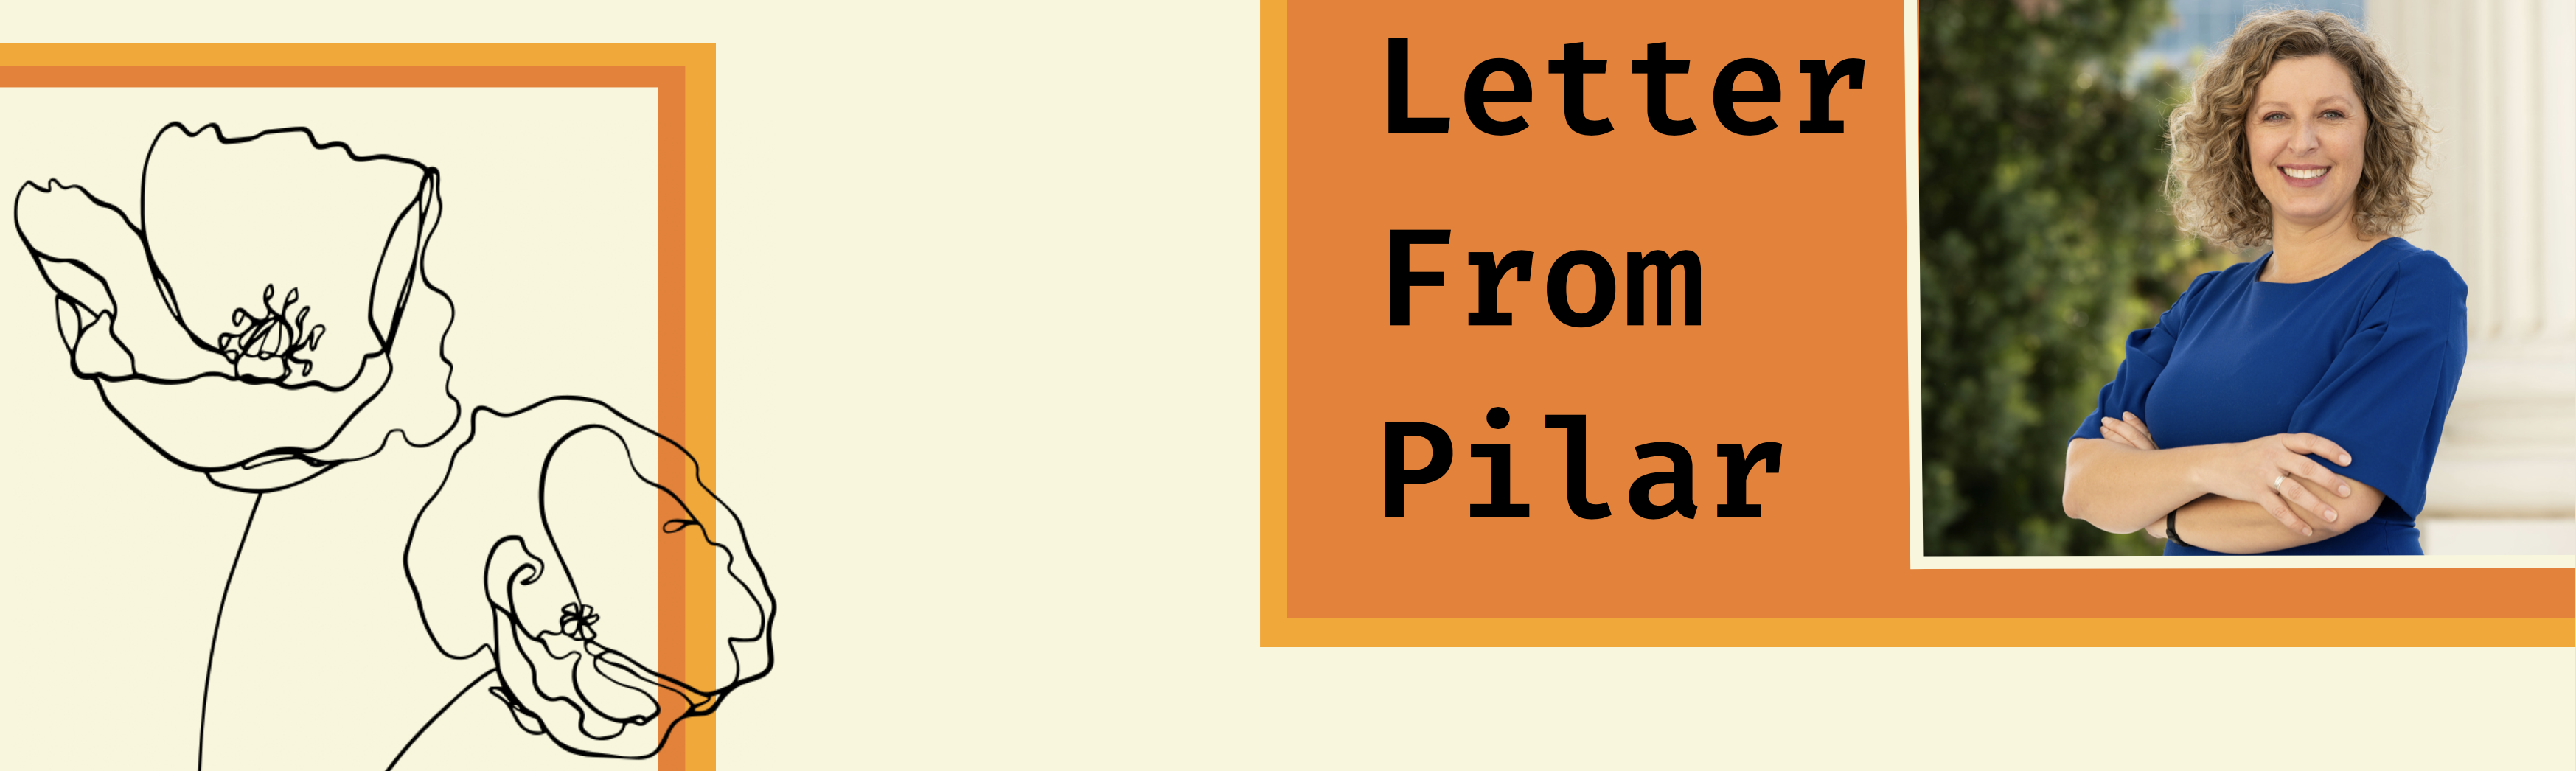 Letter from Pilar